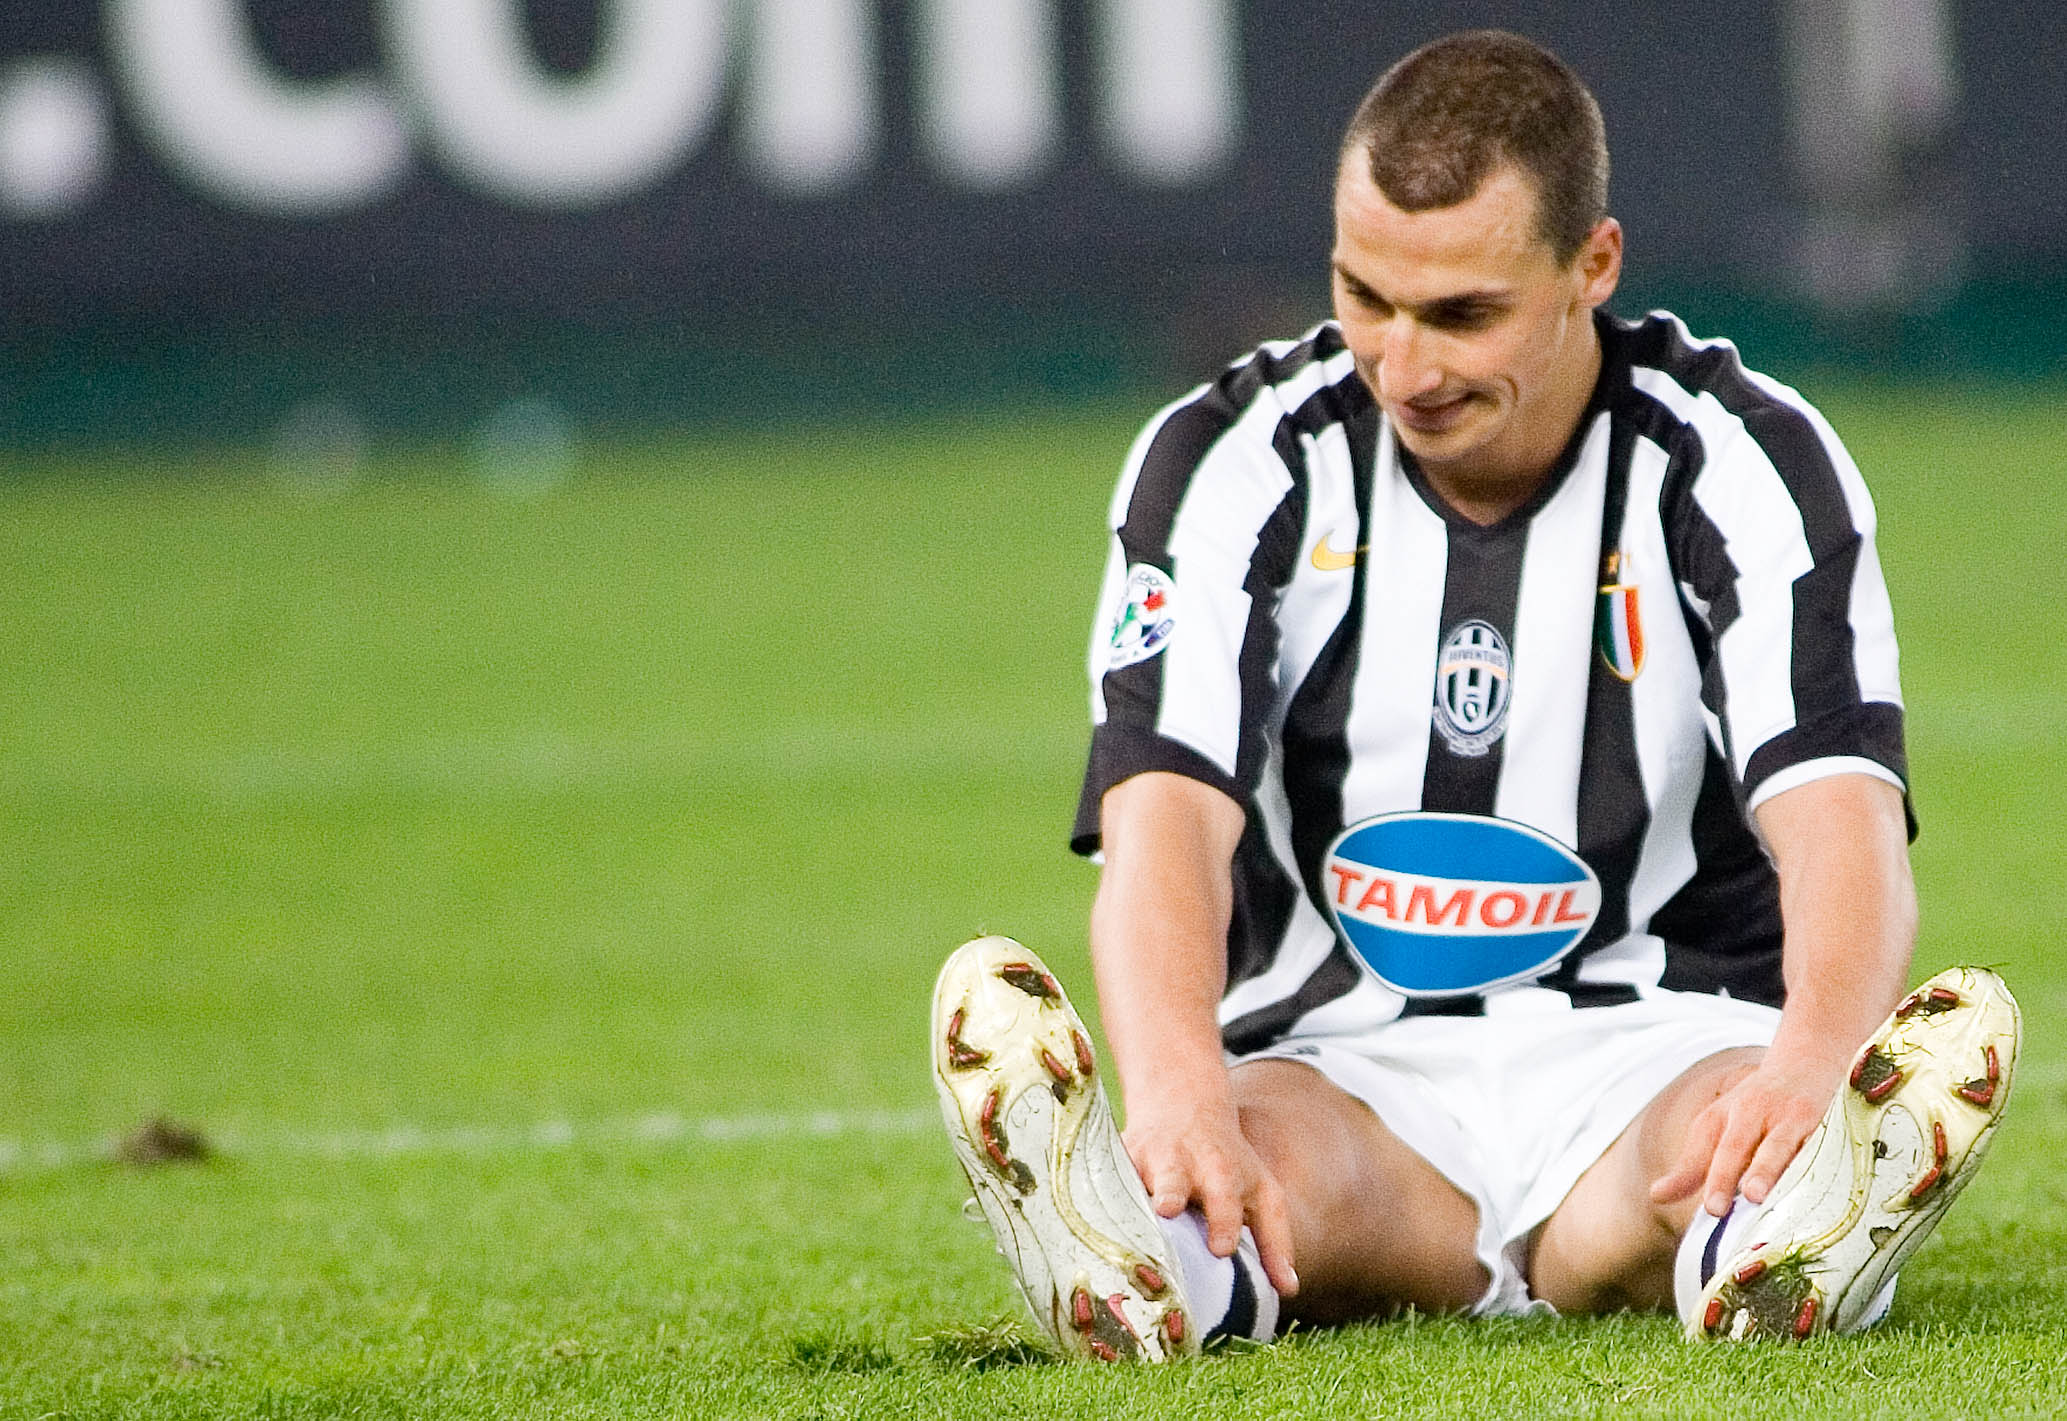 Den 31 augusti 2004 blir han klar för spel för den italienska klubben Juventus. Övergångssumman är 19 miljoner euro (motsvarande 175 miljoner kronor i dåvarande växelkurs).